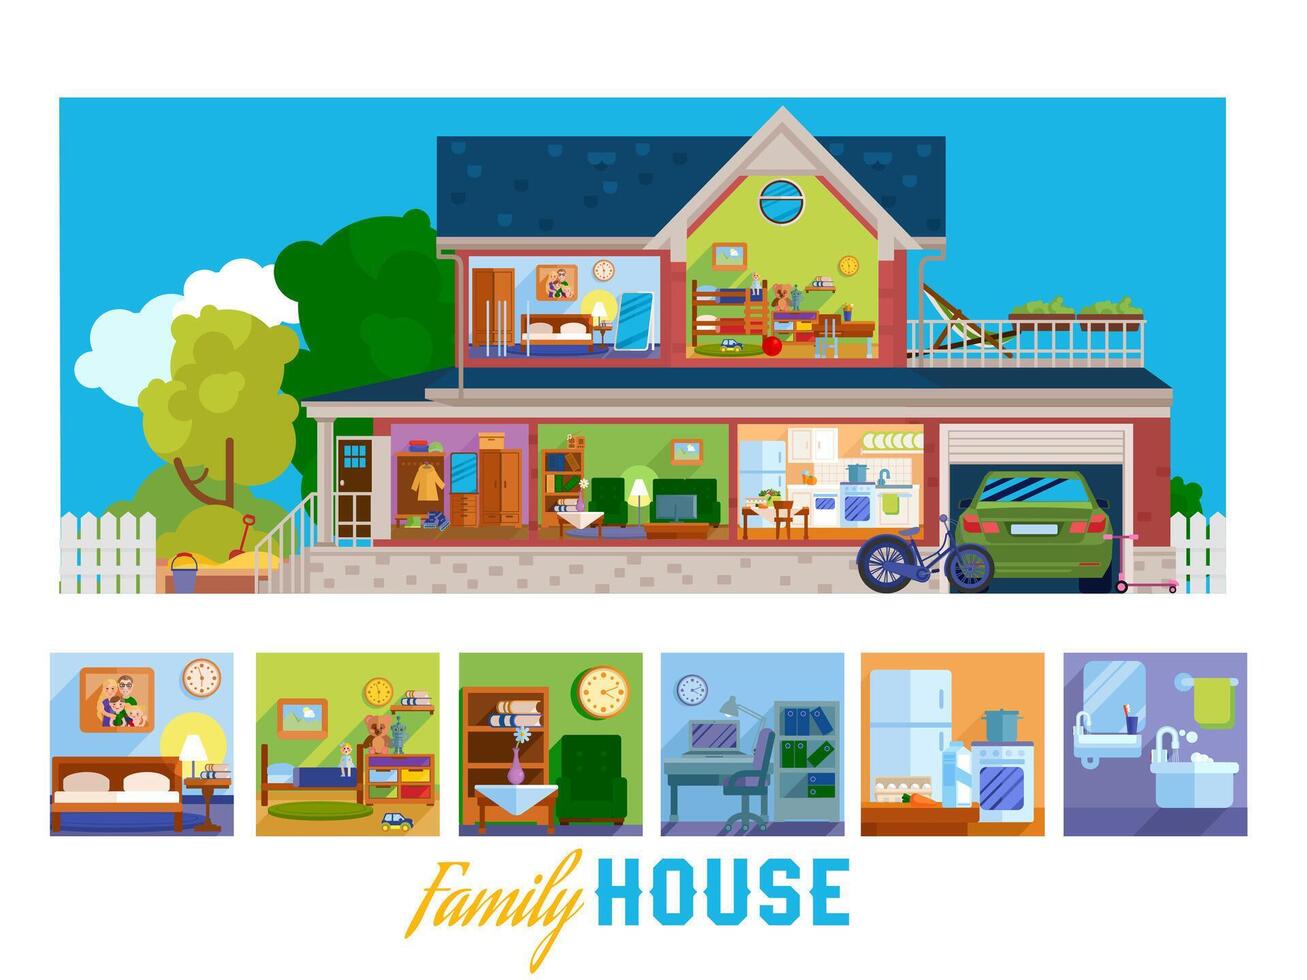 familie huis. illustratie met kamers van groot twee verdiepingen huis met garage illustrator artwork vector